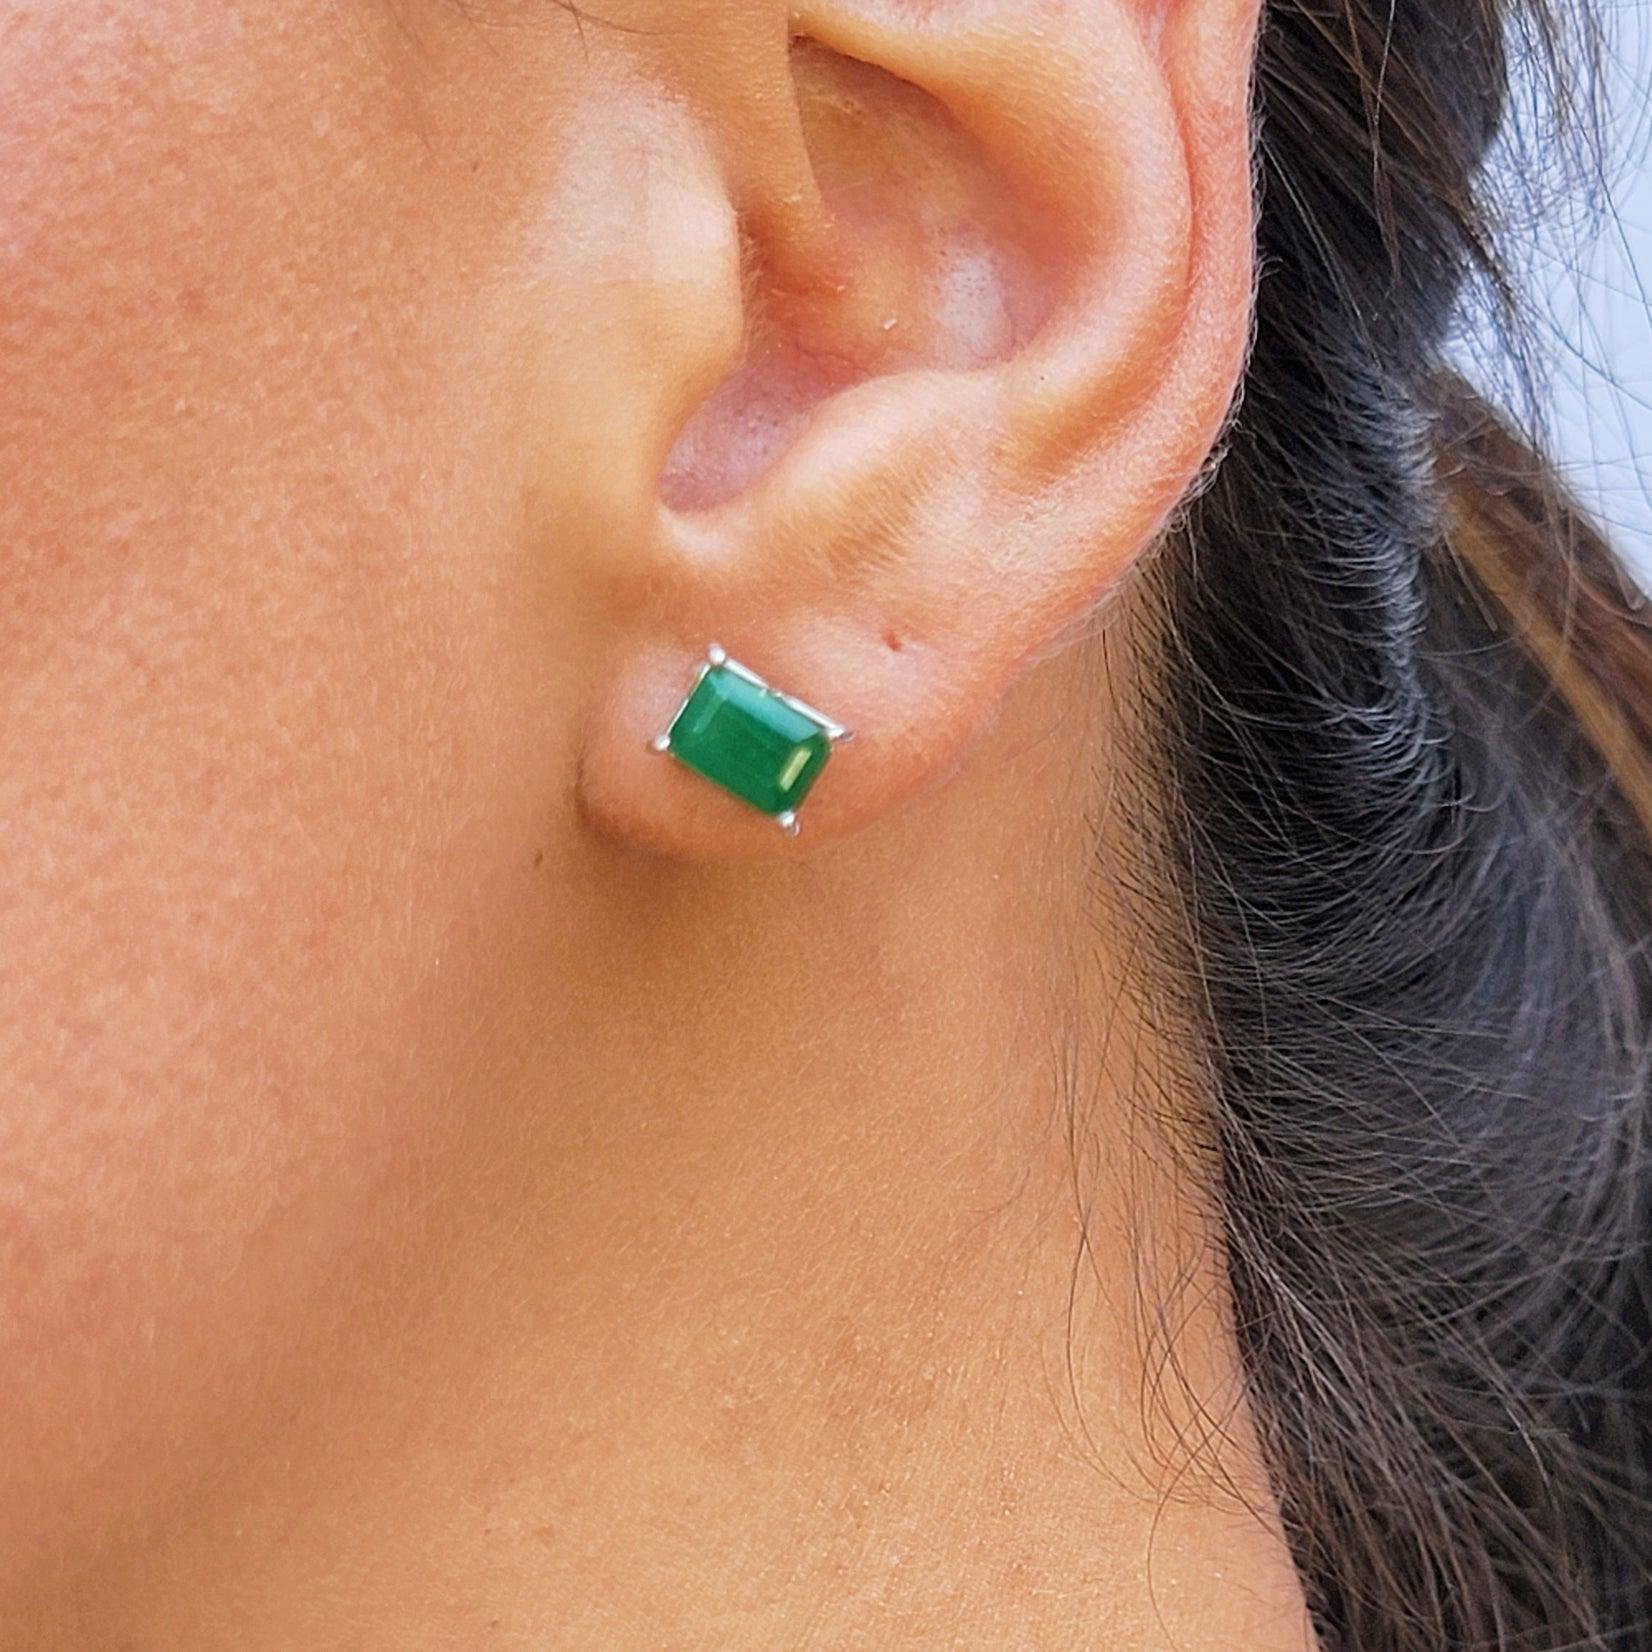 Emerald Heart Stud Earrings - Uniquelan Jewelry